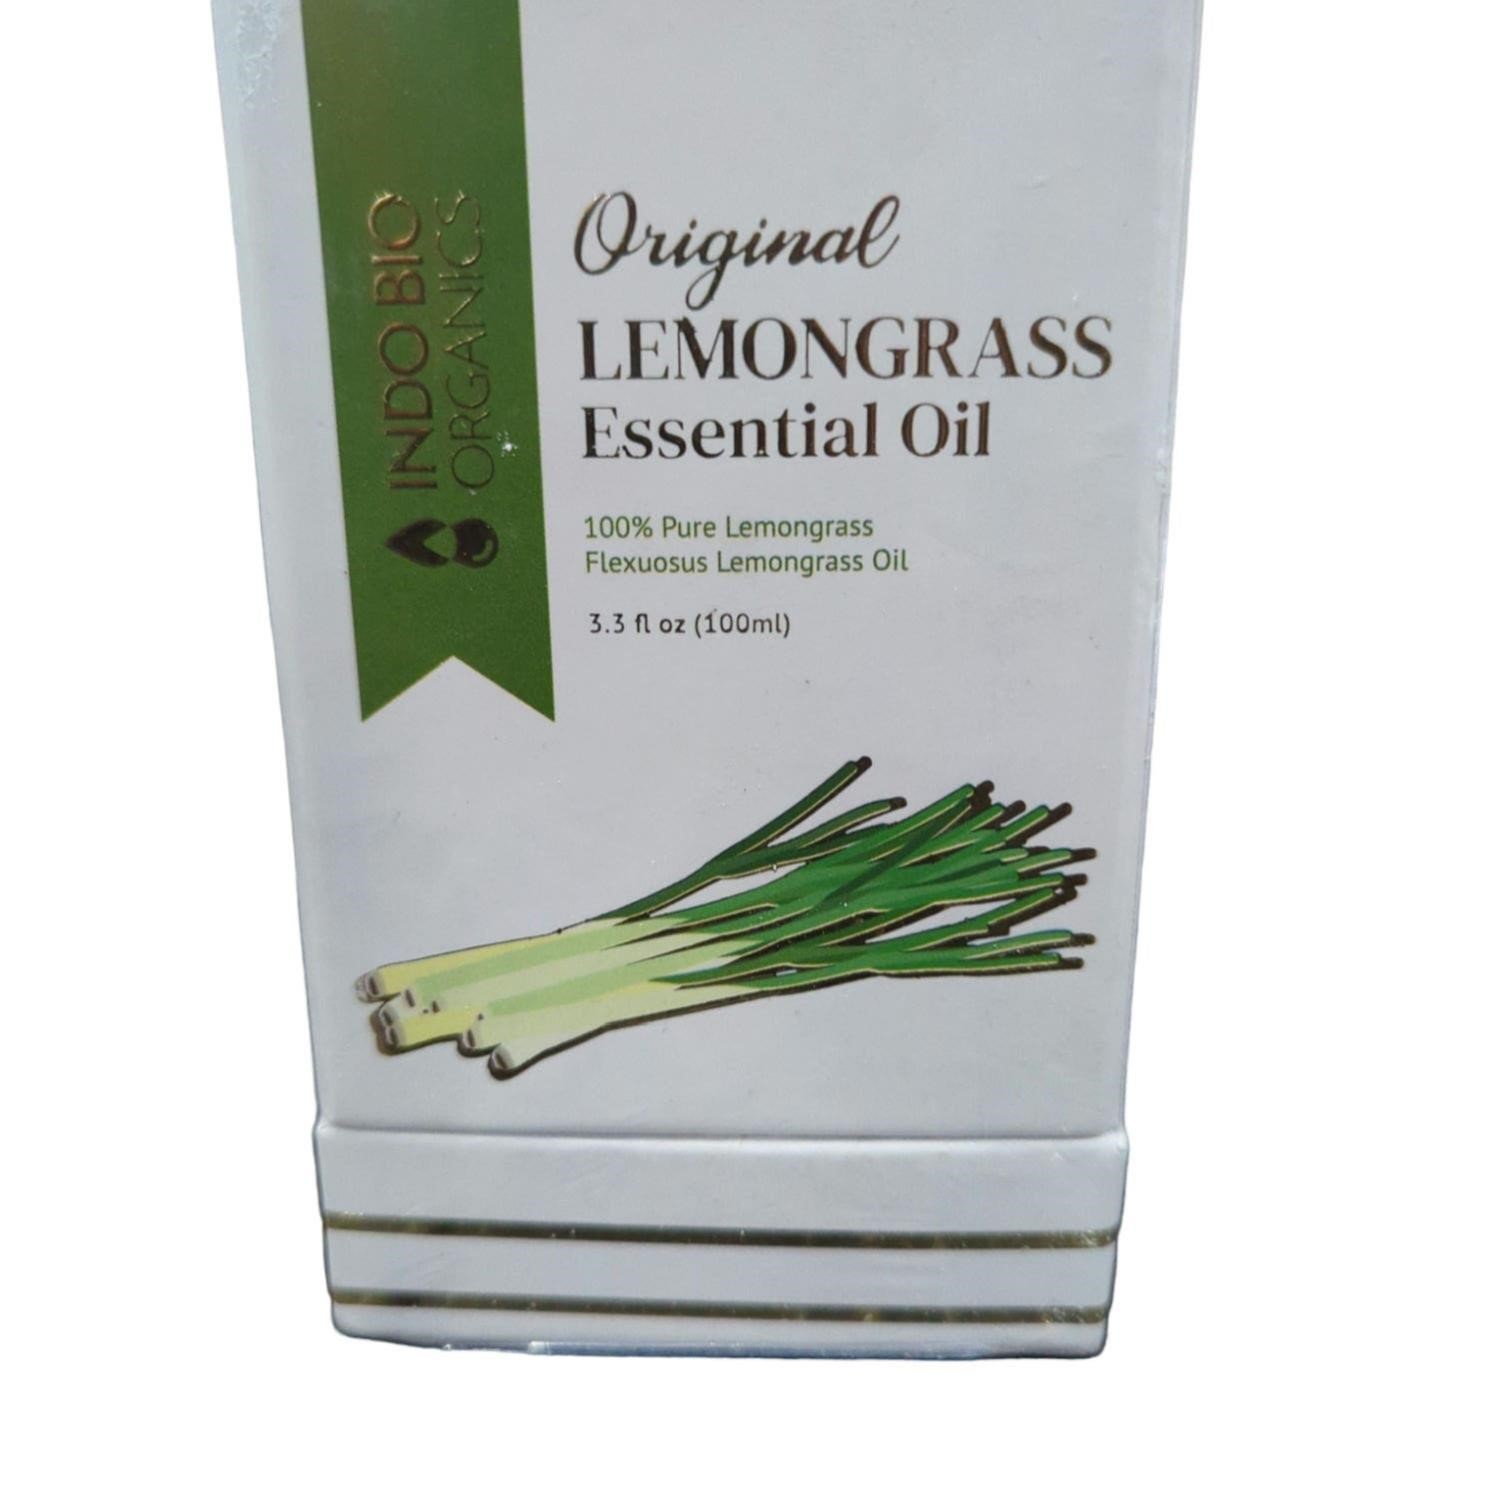 Indo bio organics lemongrass essential oil